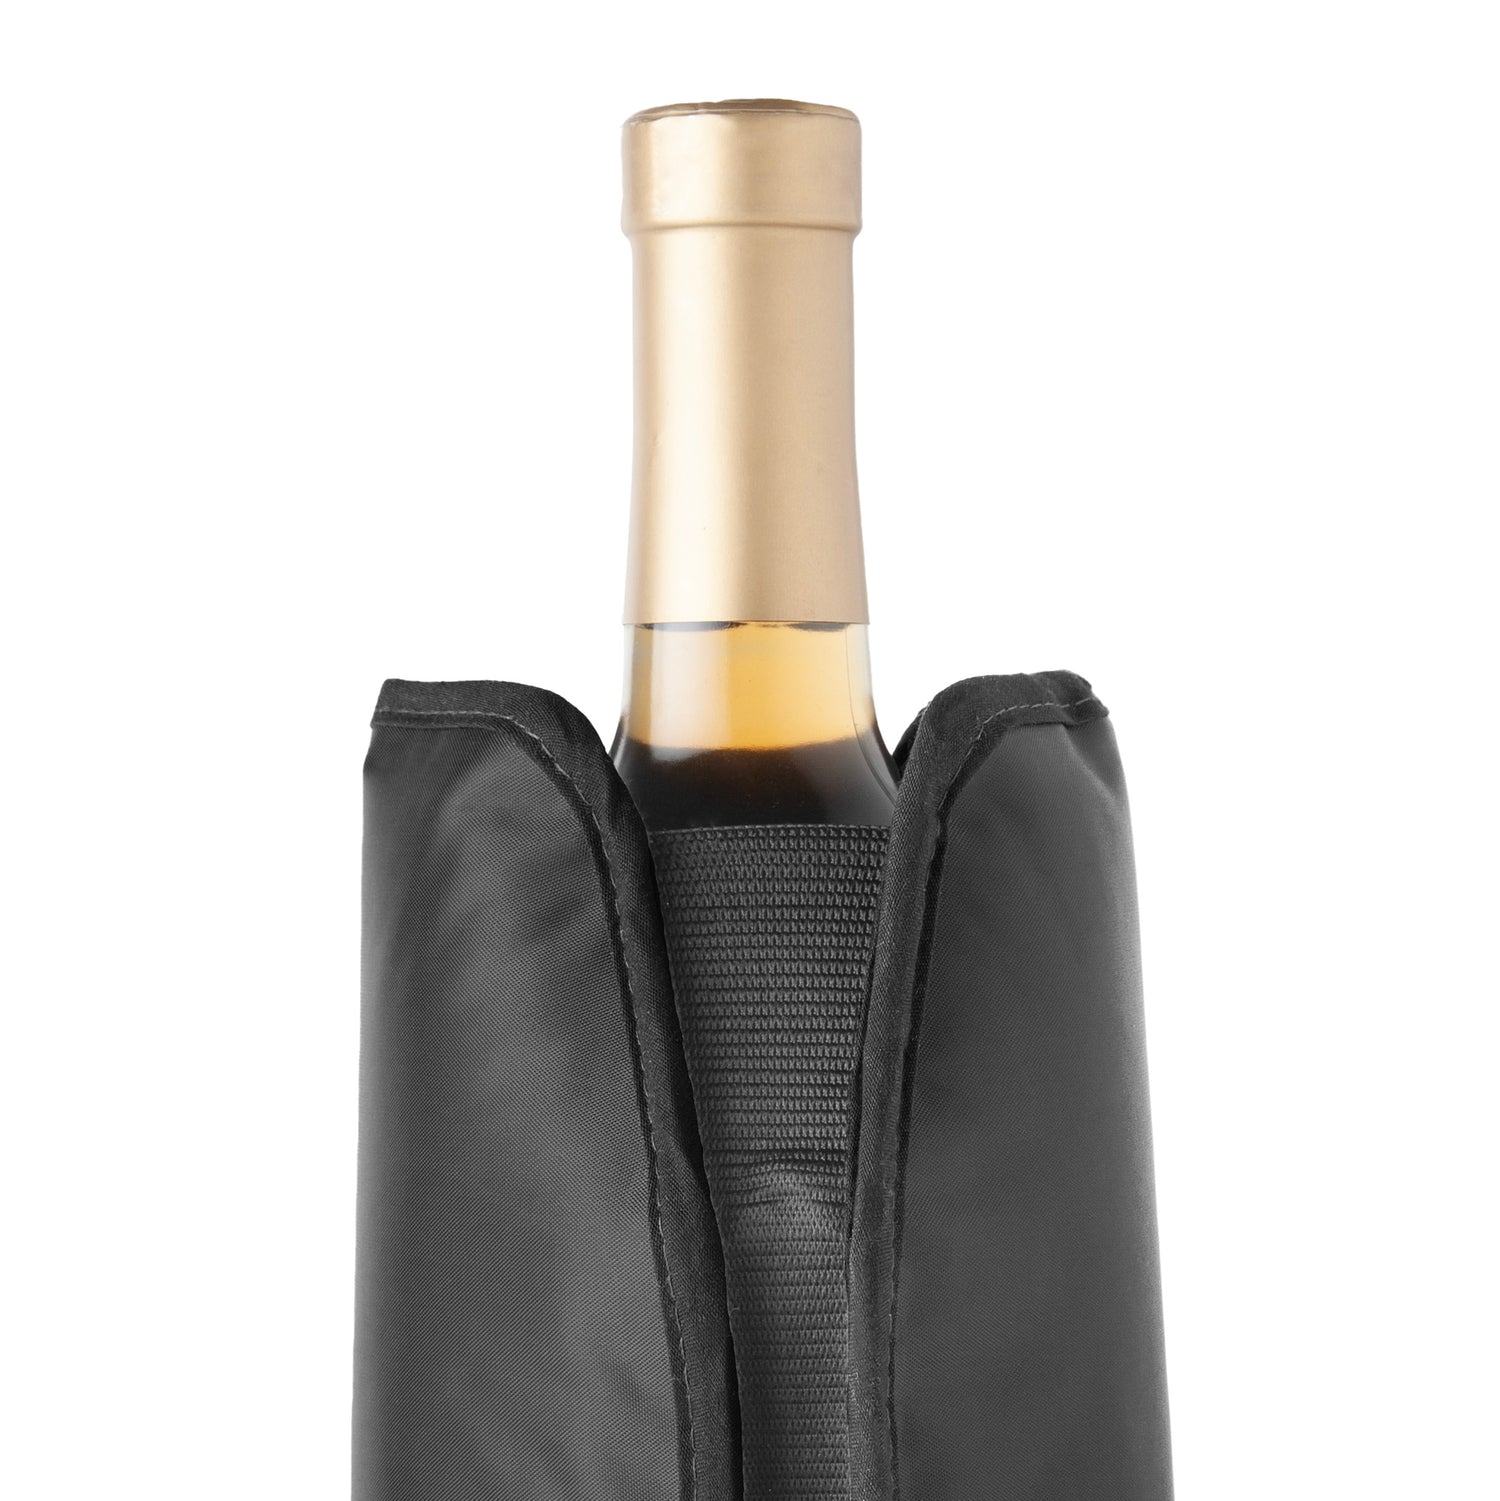 Wine Bottle Sleeve Chiller - Black